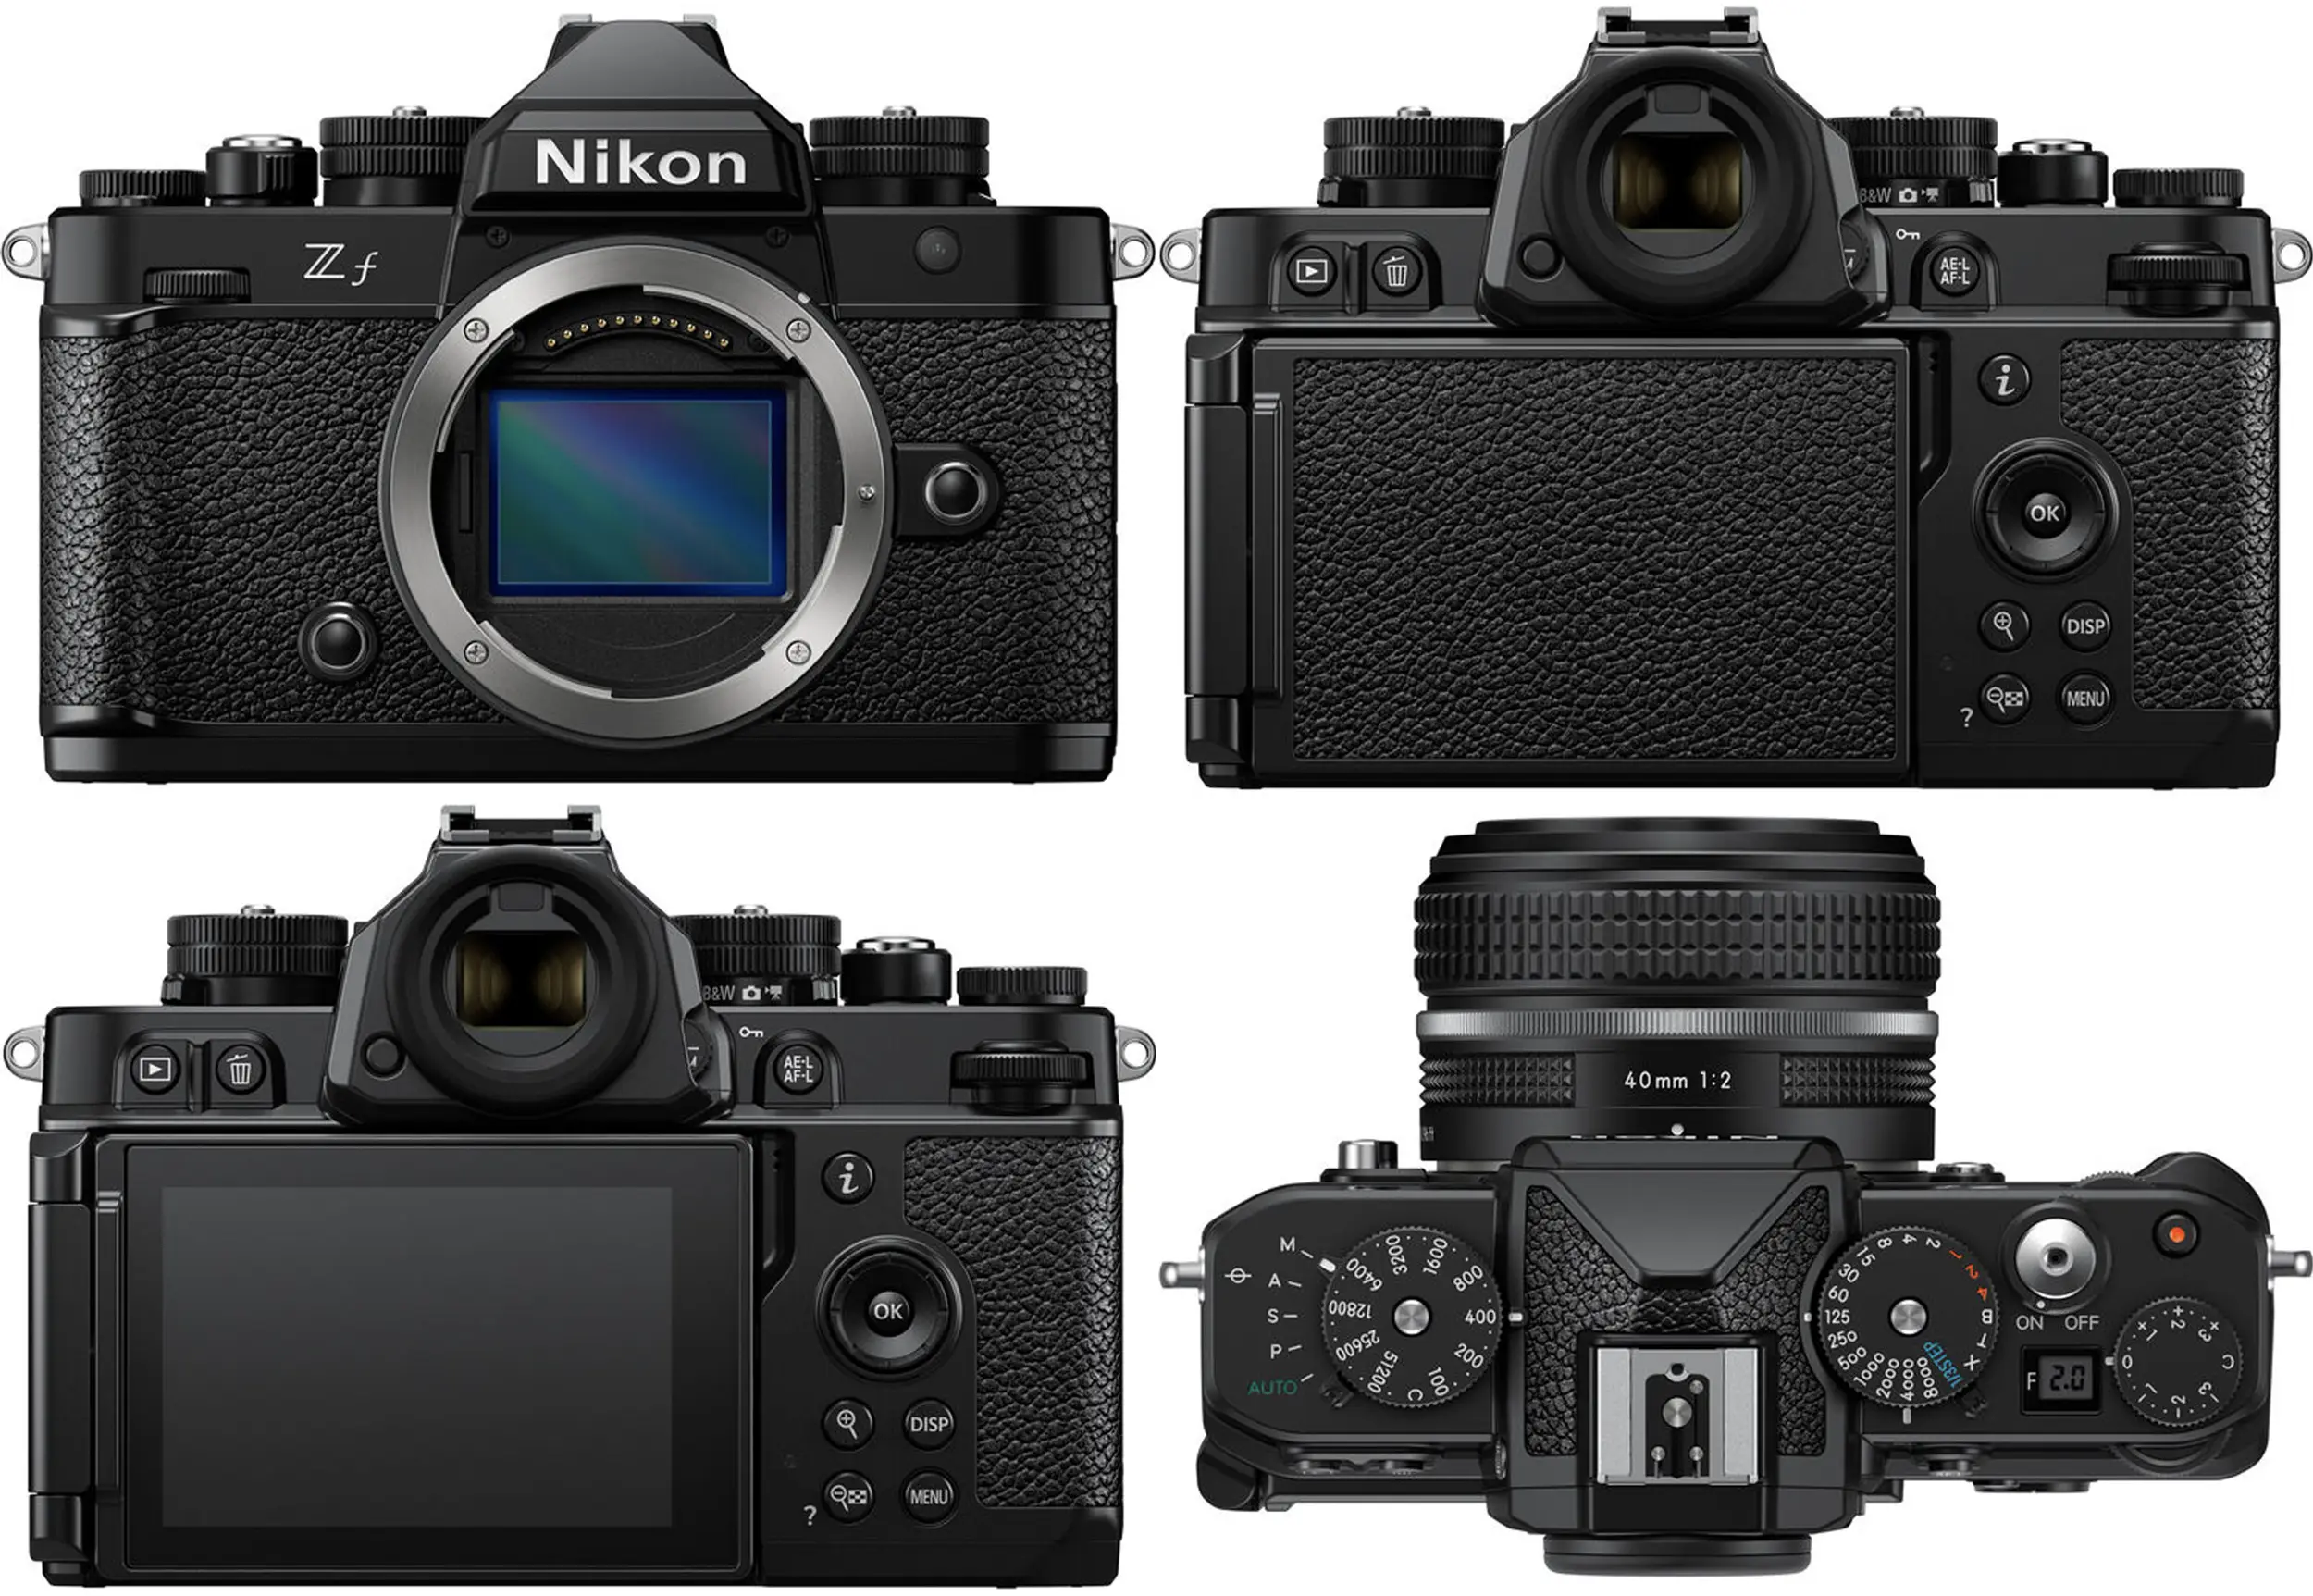 Janis Ratnieks testis Nikon Z f kaamerat ja NIKKOR Z 50mm f/1.2 S objektiivi ning jagas seda meiega. Siin on tema kogemuse eesti keelne artikkel. Nikon Z f – ol